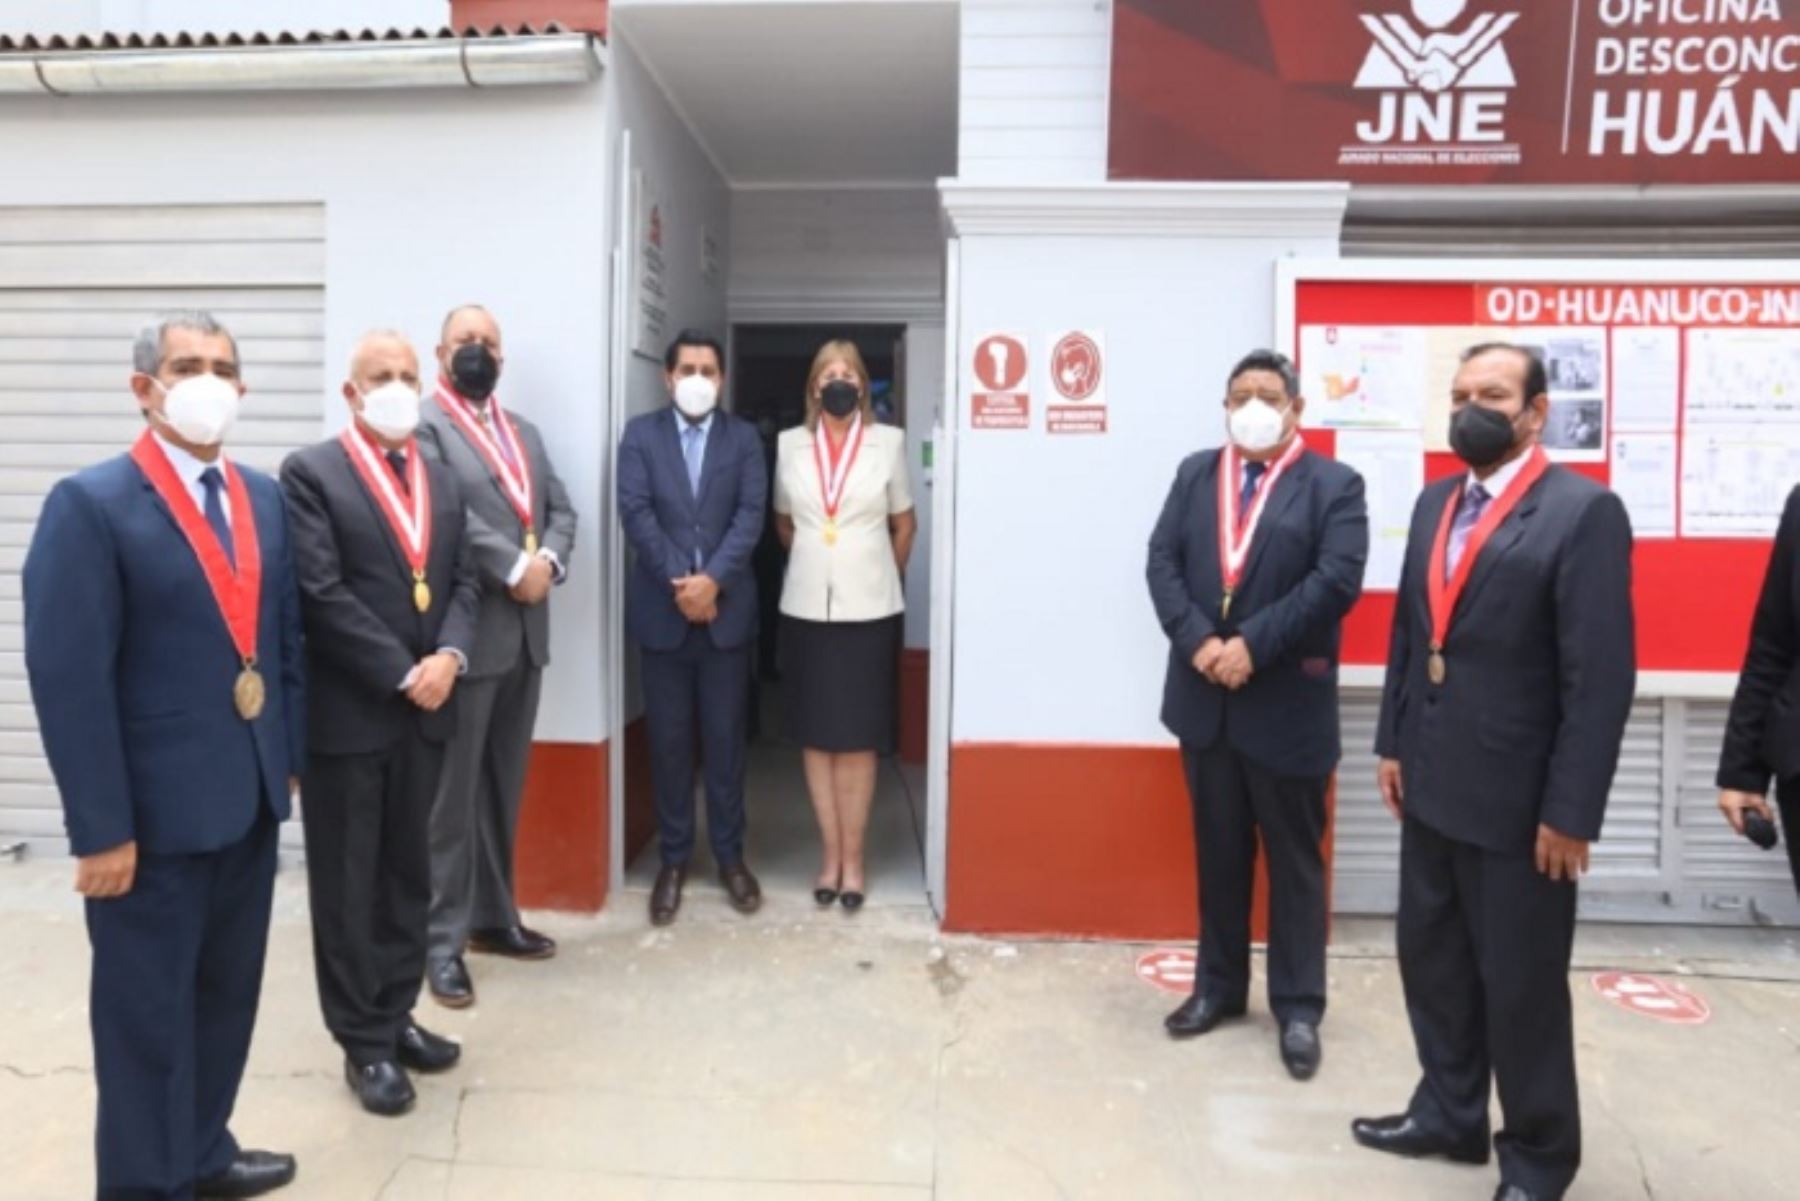 JNE inauguró ampliación de oficina desconcentrada en Huánuco para mejorar atención